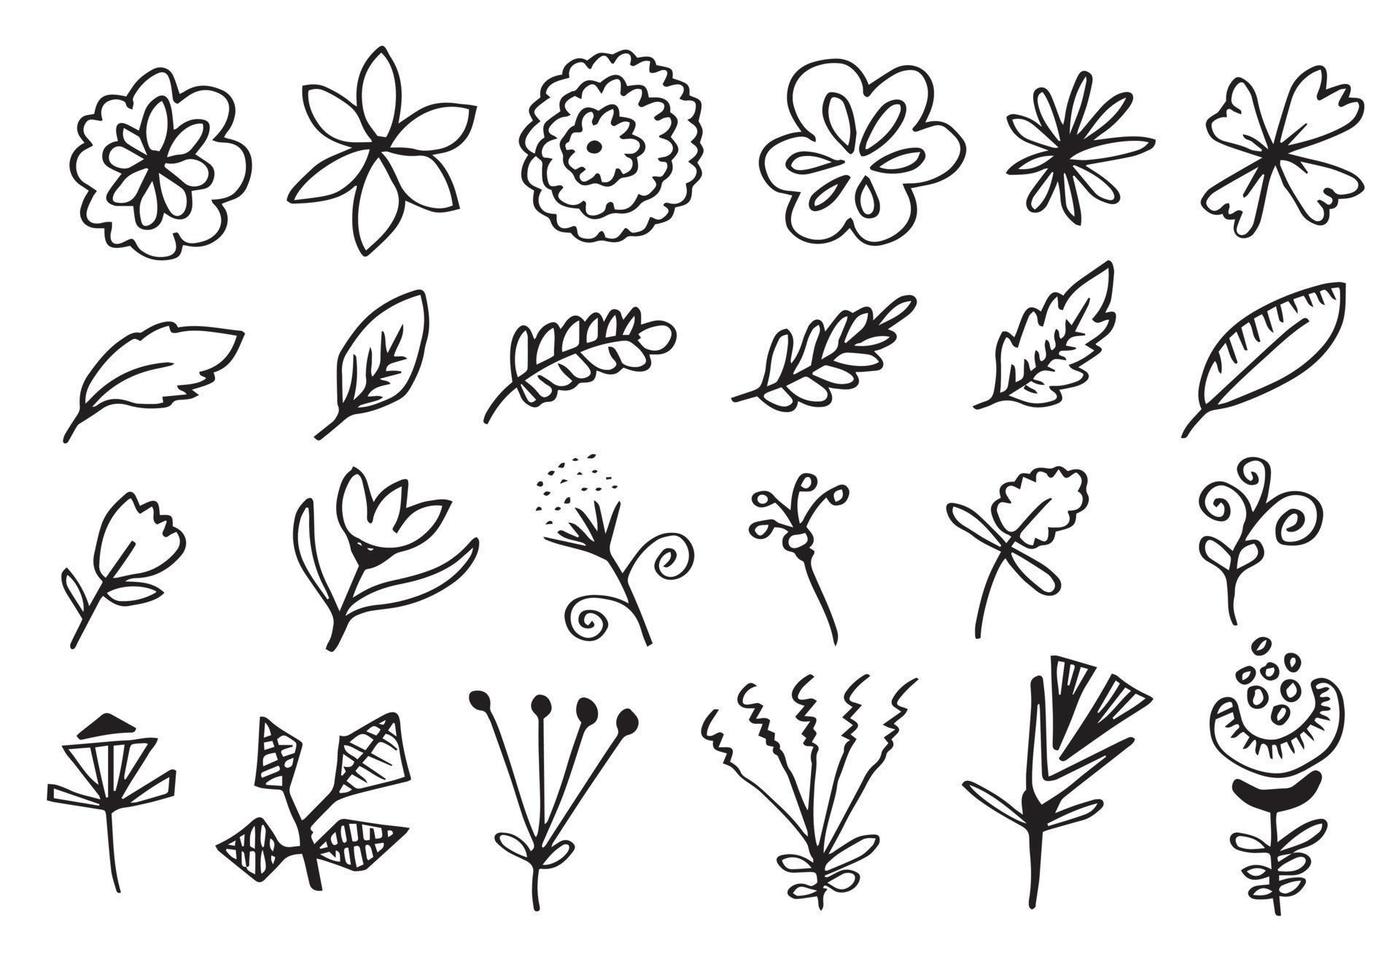 una raccolta di immagini di fiori disegnati a mano come campanule, crisantemi, girasoli, fiori di cotone e foglie tropicali vettore